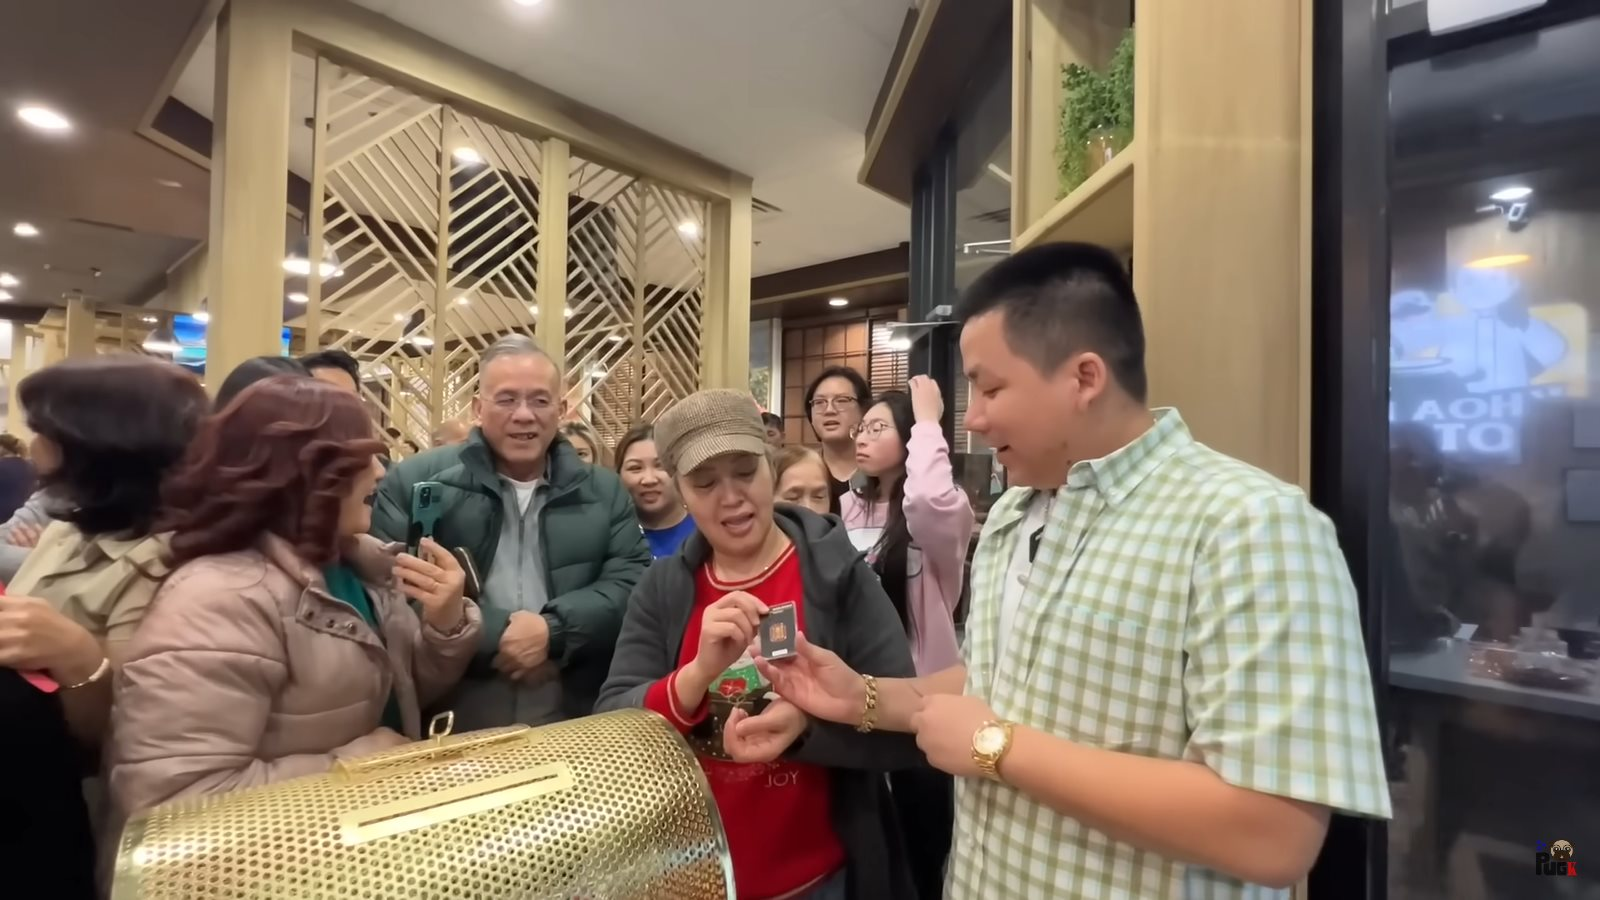 Mở quán lẩu ở Mỹ vì đam mê chứ lời lãi gì tầm này: Khoa Pug tặng vàng Thụy Sĩ cho khách tới ủng hộ, khán giả ở Việt Nam cũng có quà - Ảnh 5.